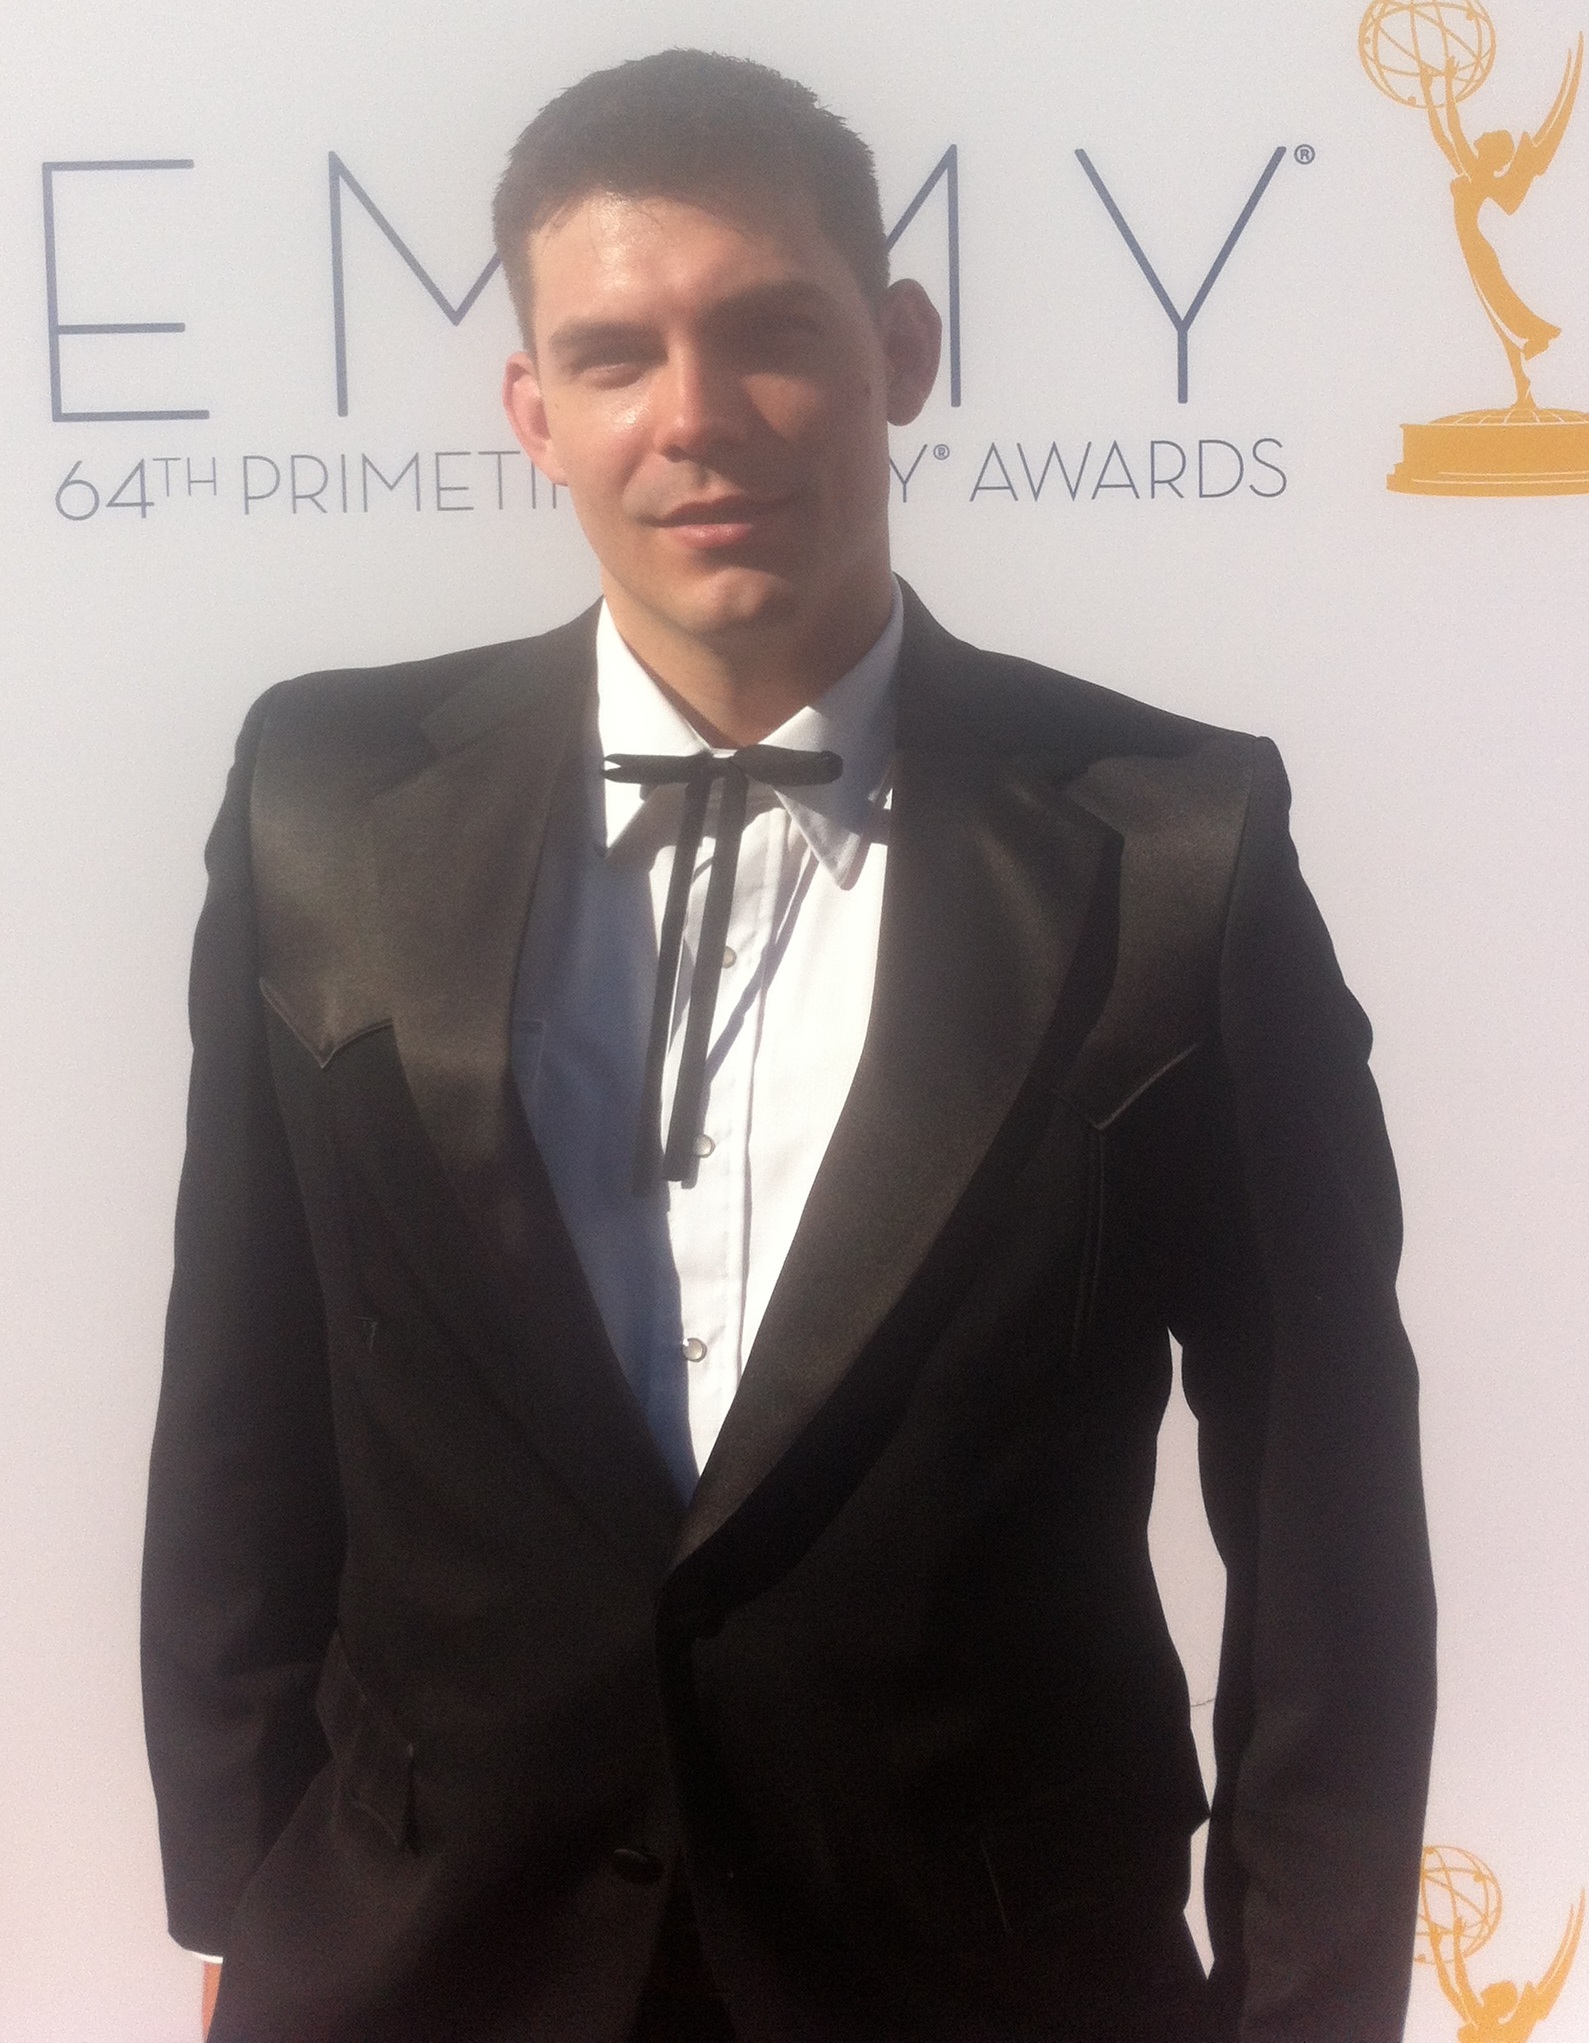 Jon Mayfield @ The 64th Primetime Emmy Awards